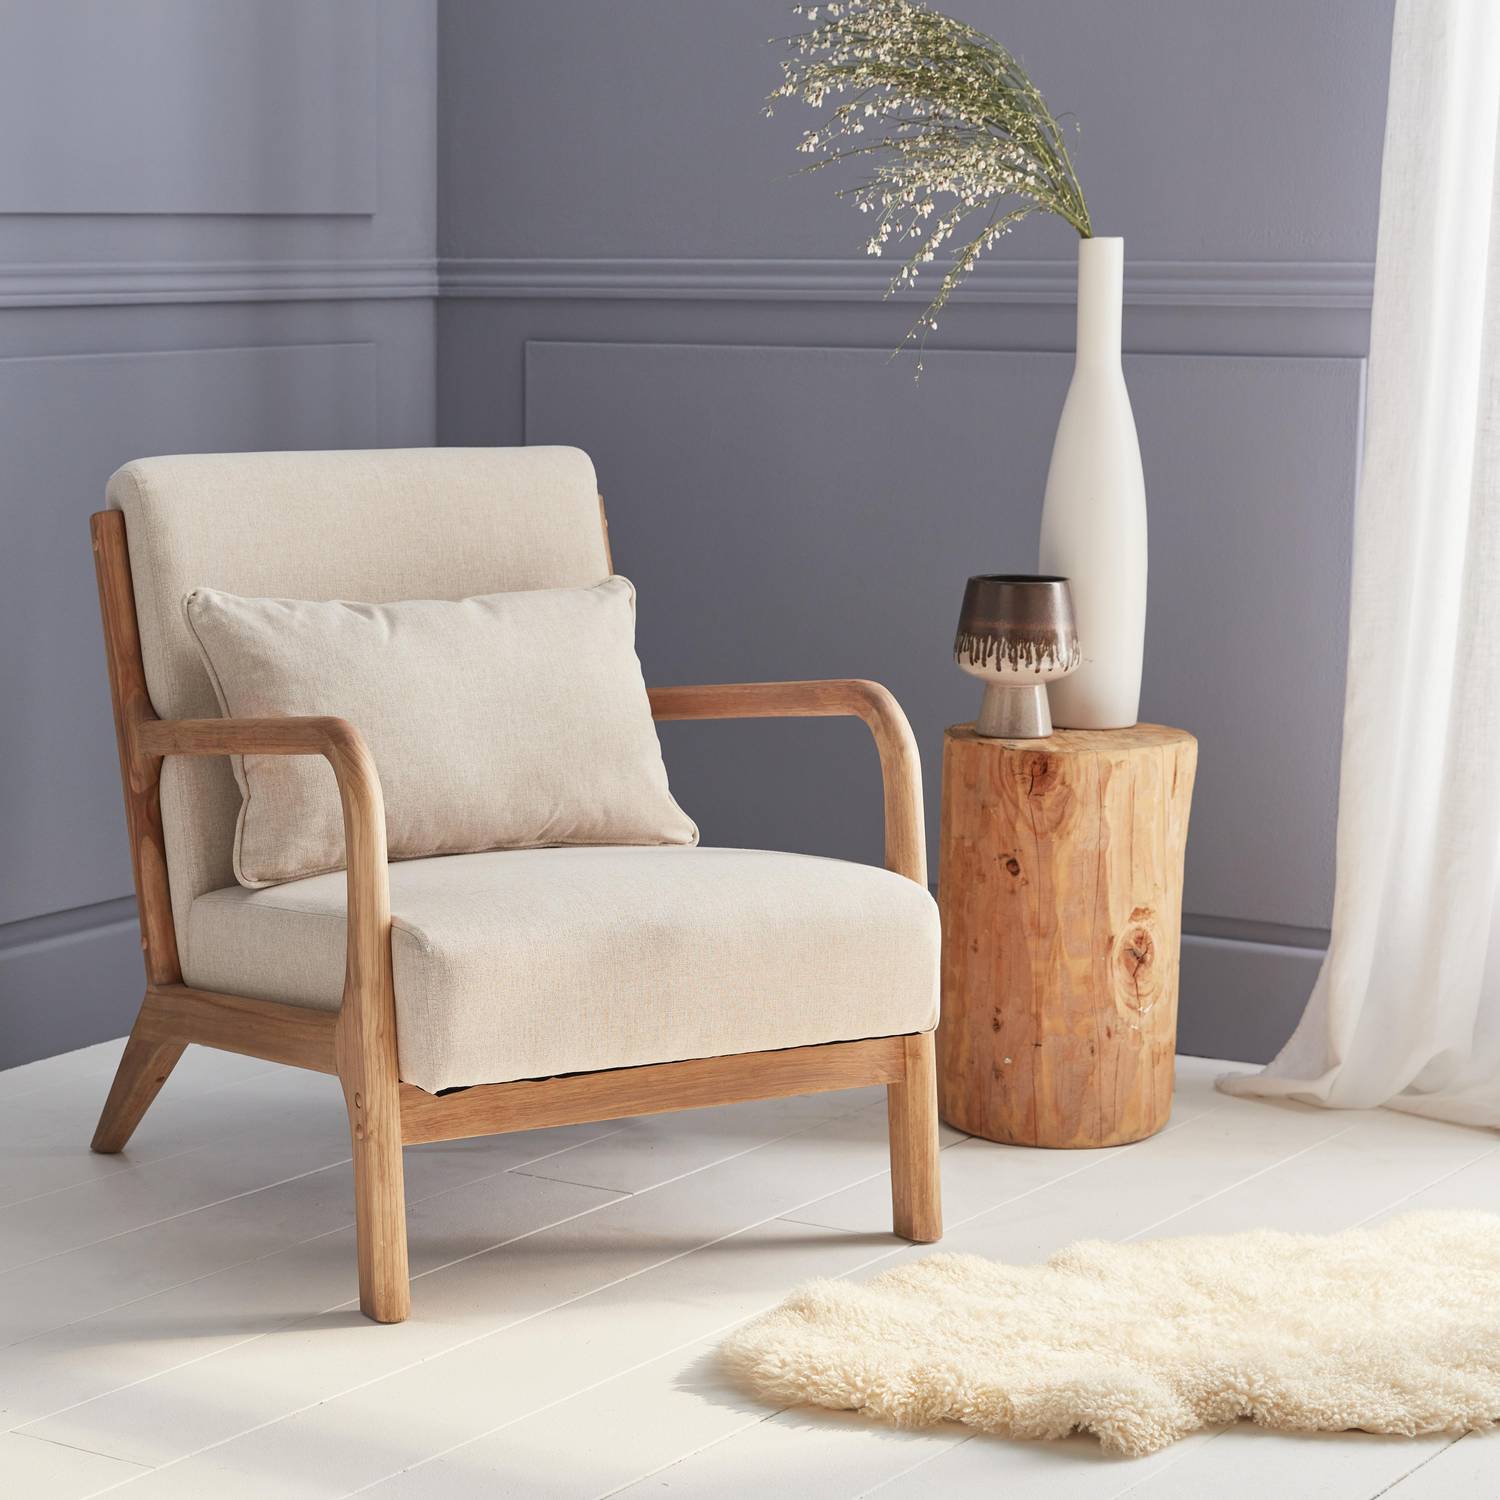 Sillón de diseño en madera y tela, 1 asiento recto fijo, patas de compás escandinavas, armazón de madera maciza, cómodo asiento beige Photo1